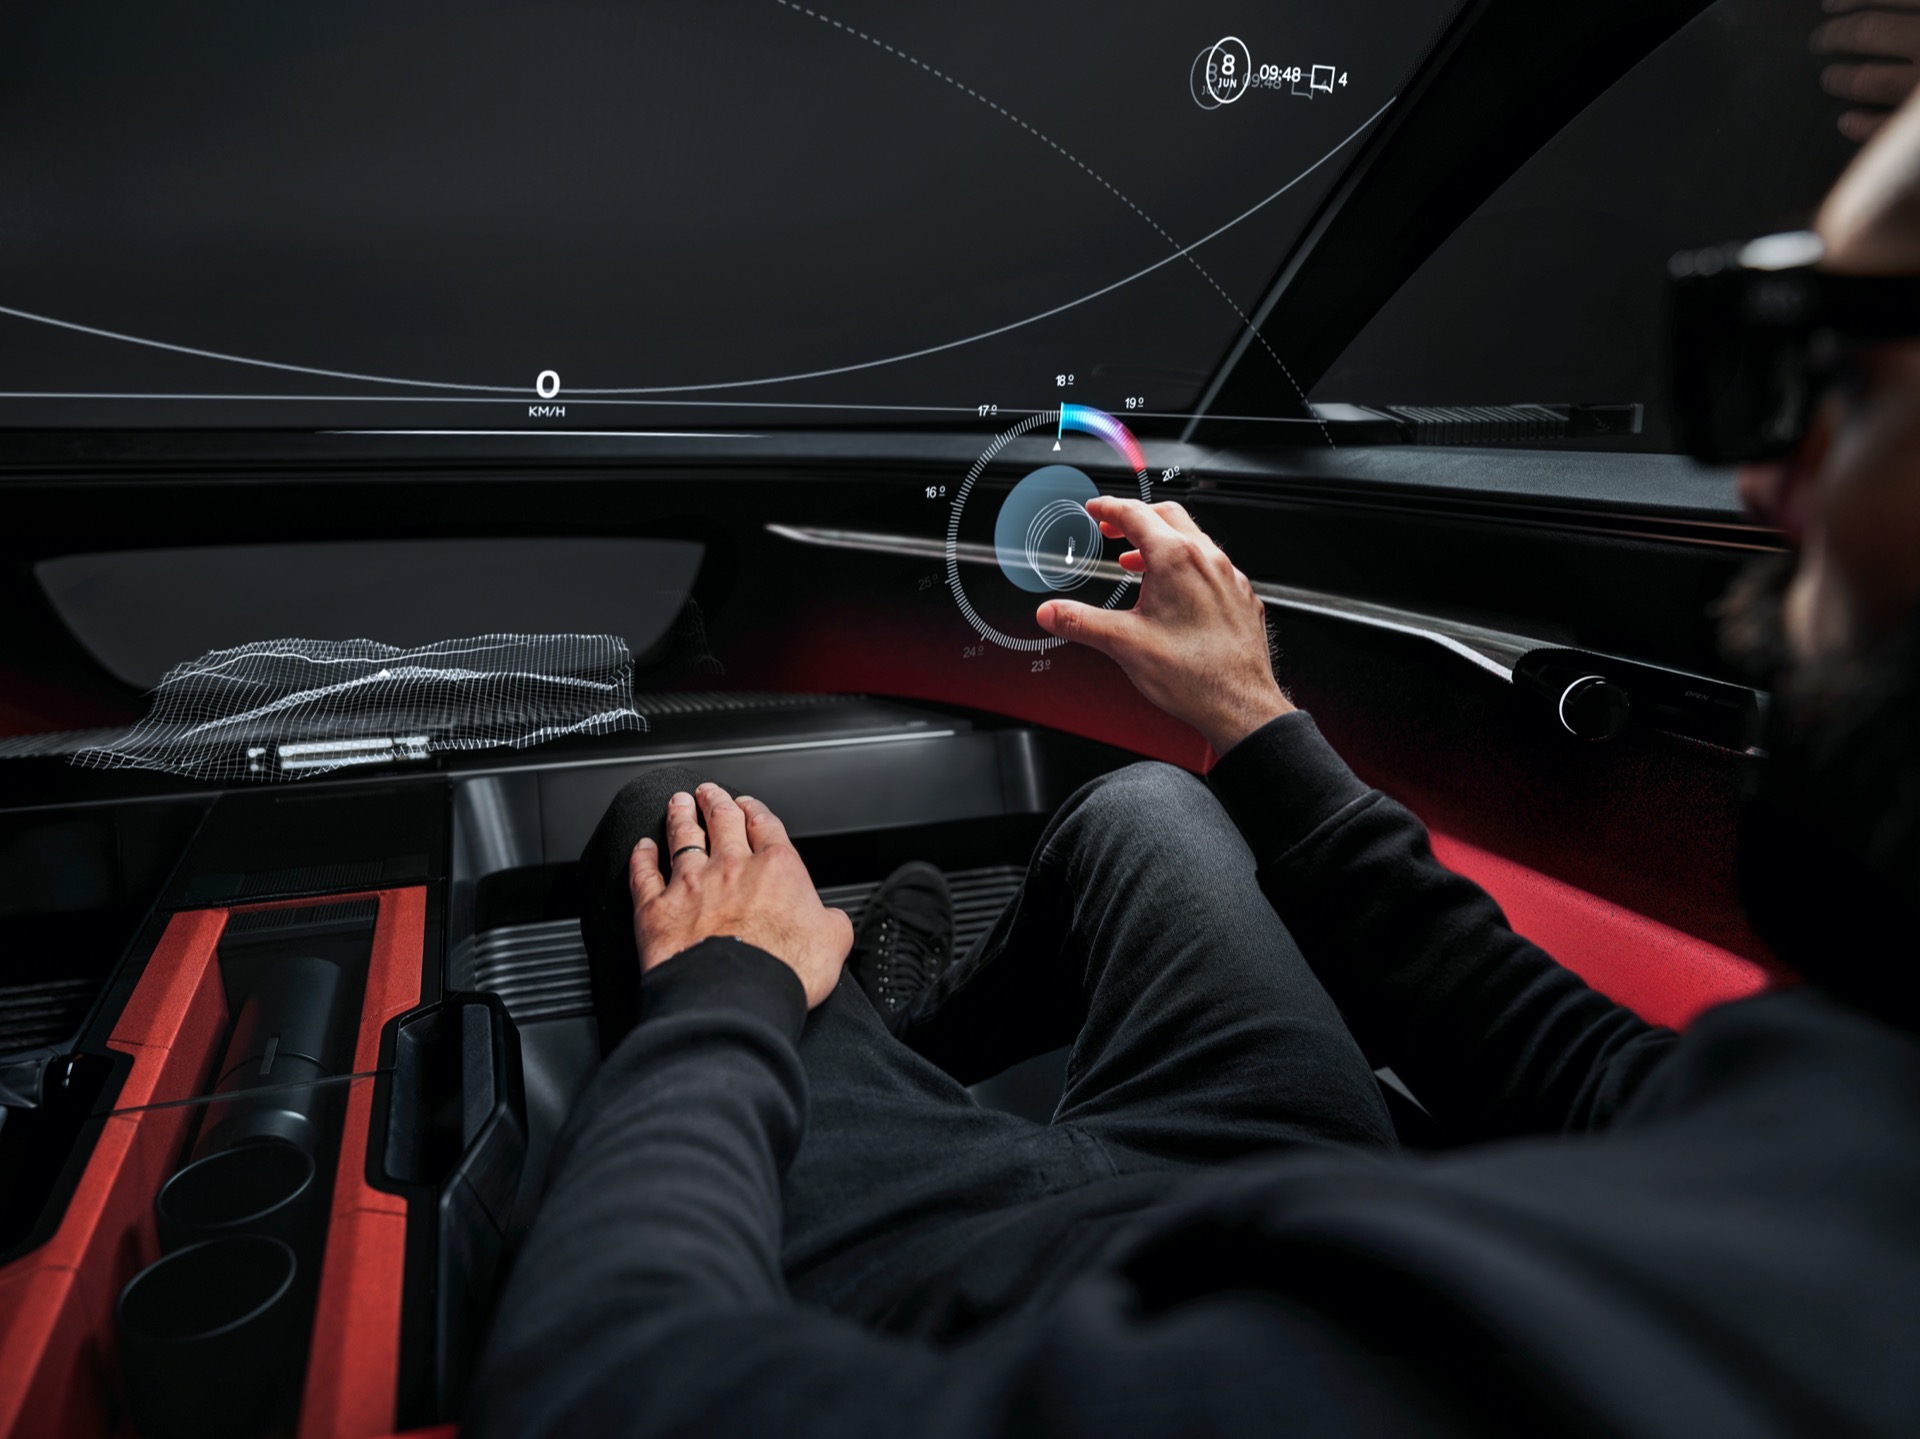 Audi Activesphere Concept 44